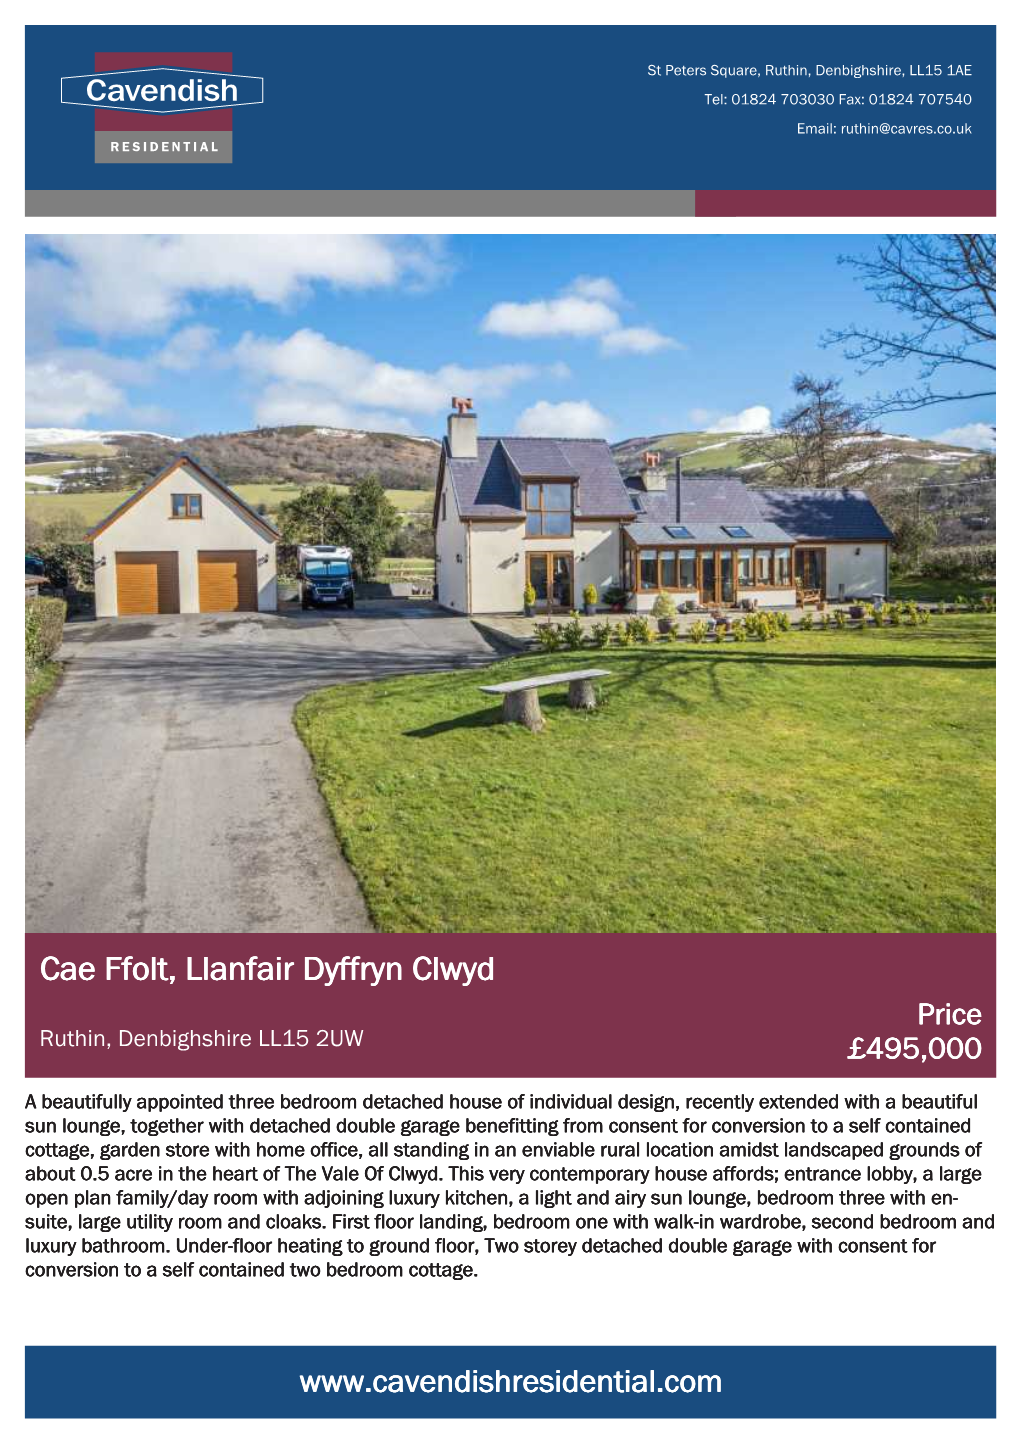 Cae Ffolt, Llanfair Dyffryn Clwyd Price Ruthin, Denbighshire LL15 2UW £495,000